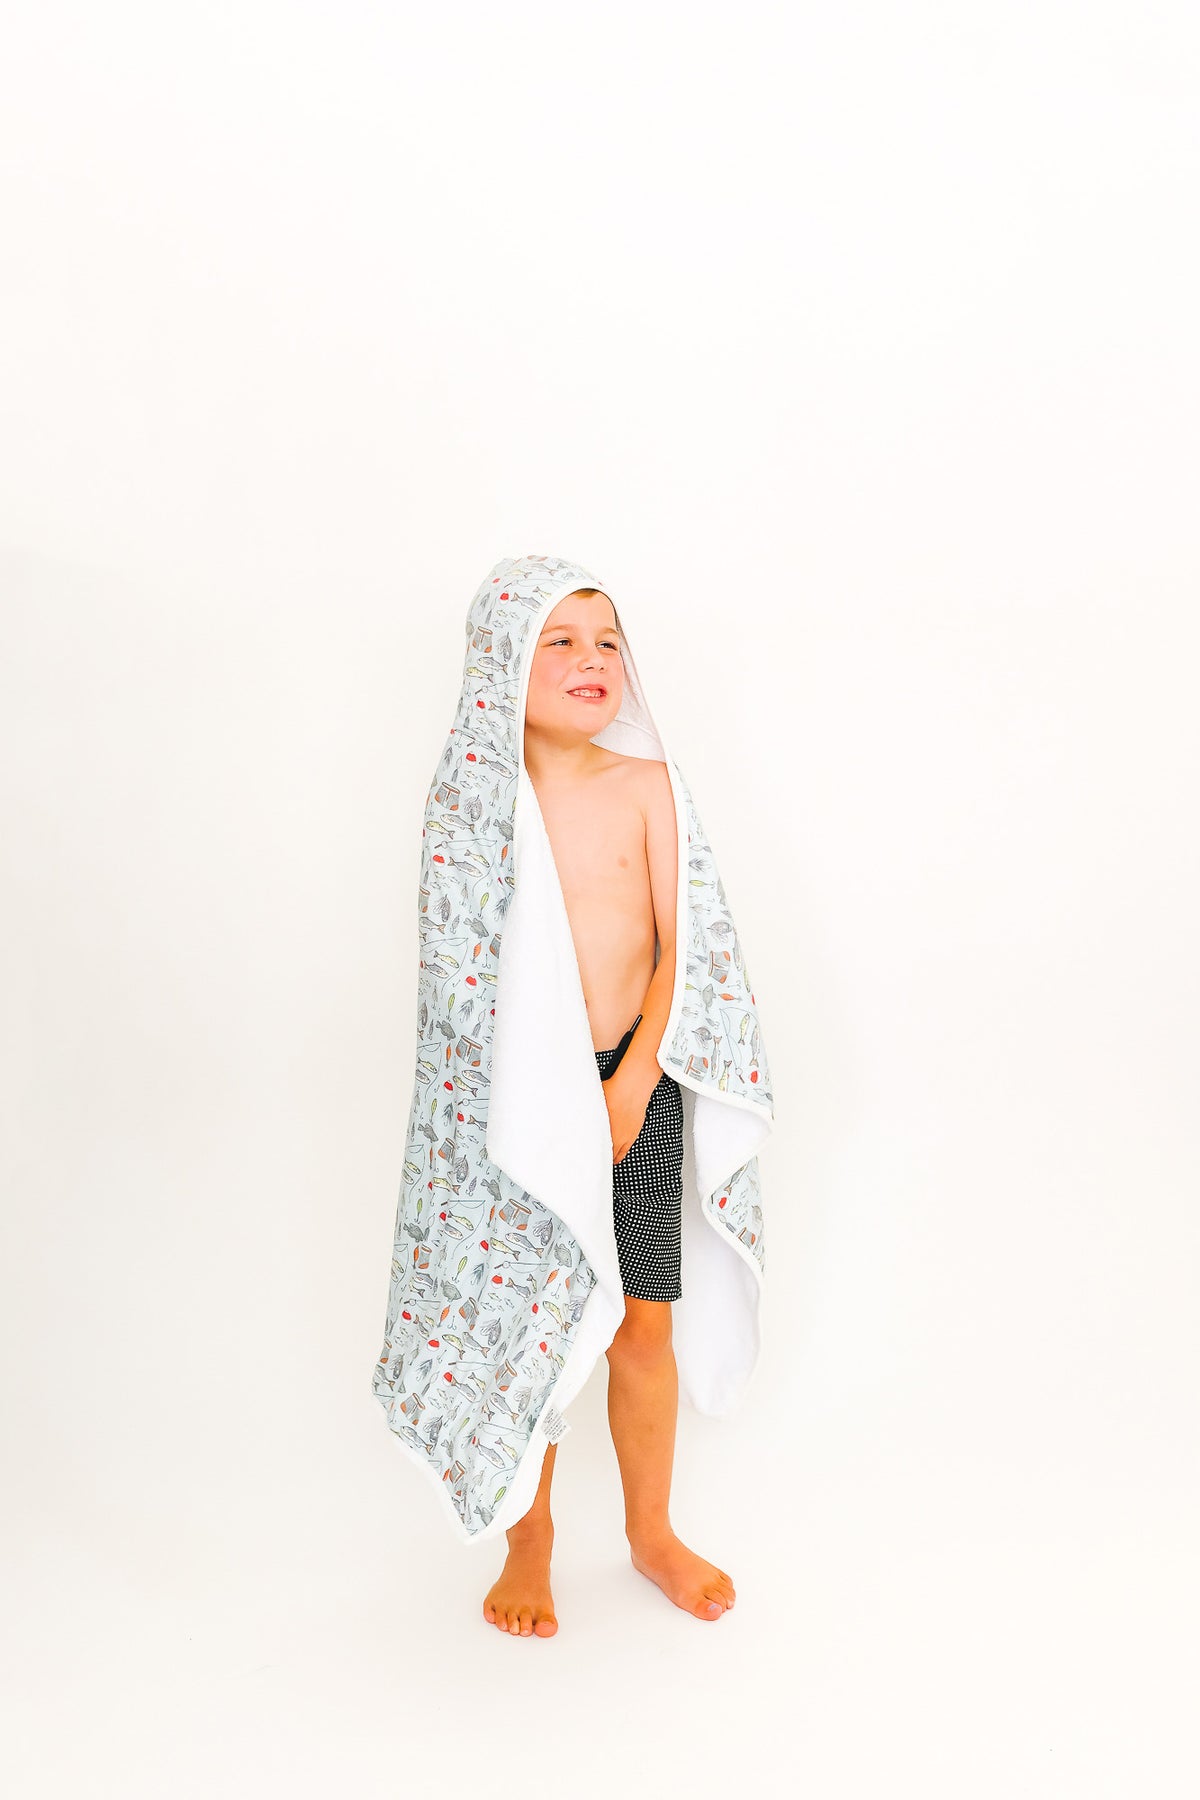 Premium Big Kid Hooded Towel - Trout